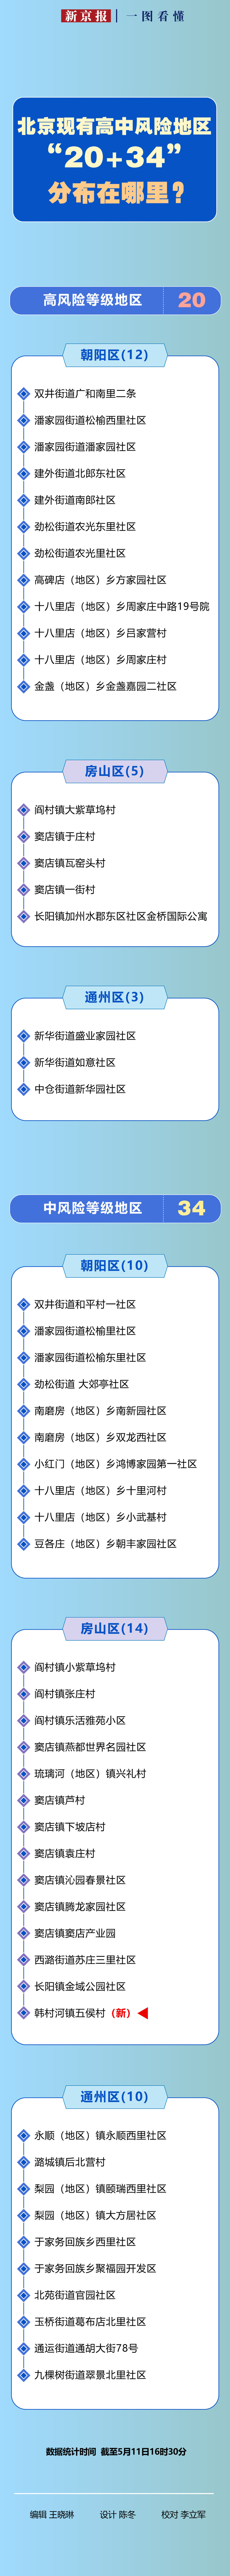 高中|一图看懂丨北京现有高中风险地区“20+34”，分布在哪里？